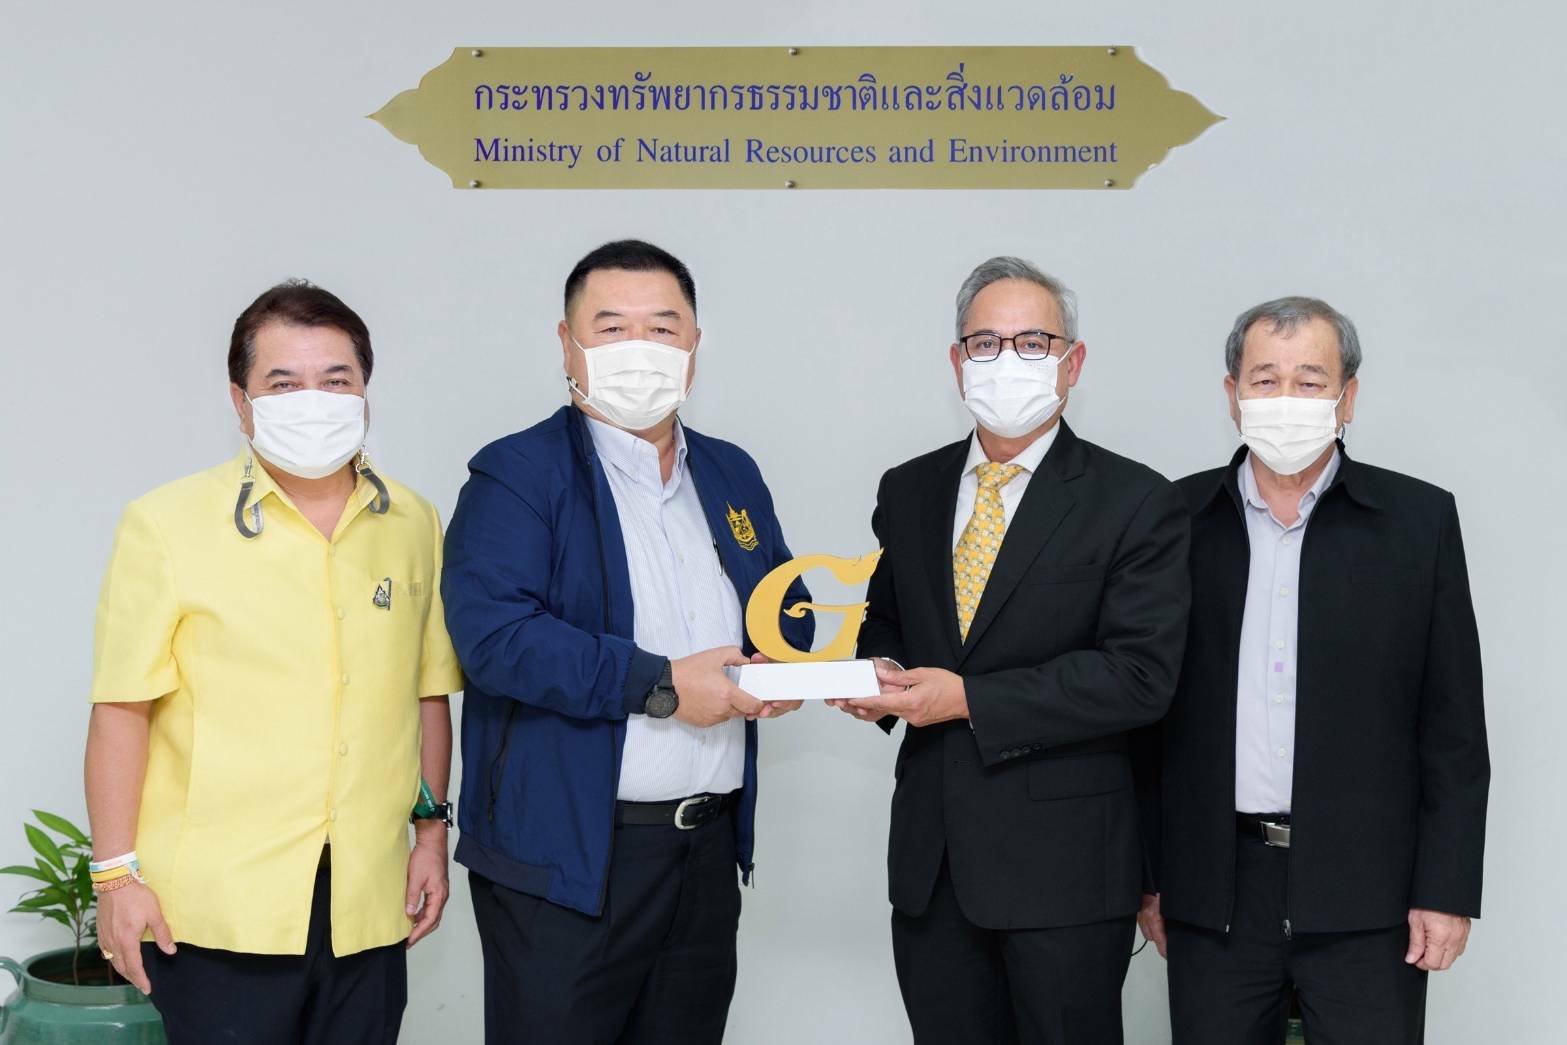 กรุงศรี คว้ารางวัลสำนักงานสีเขียวระดับดีเยี่ยม (Gold) รายแรกในระบบธนาคารพาณิชย์ไทย 